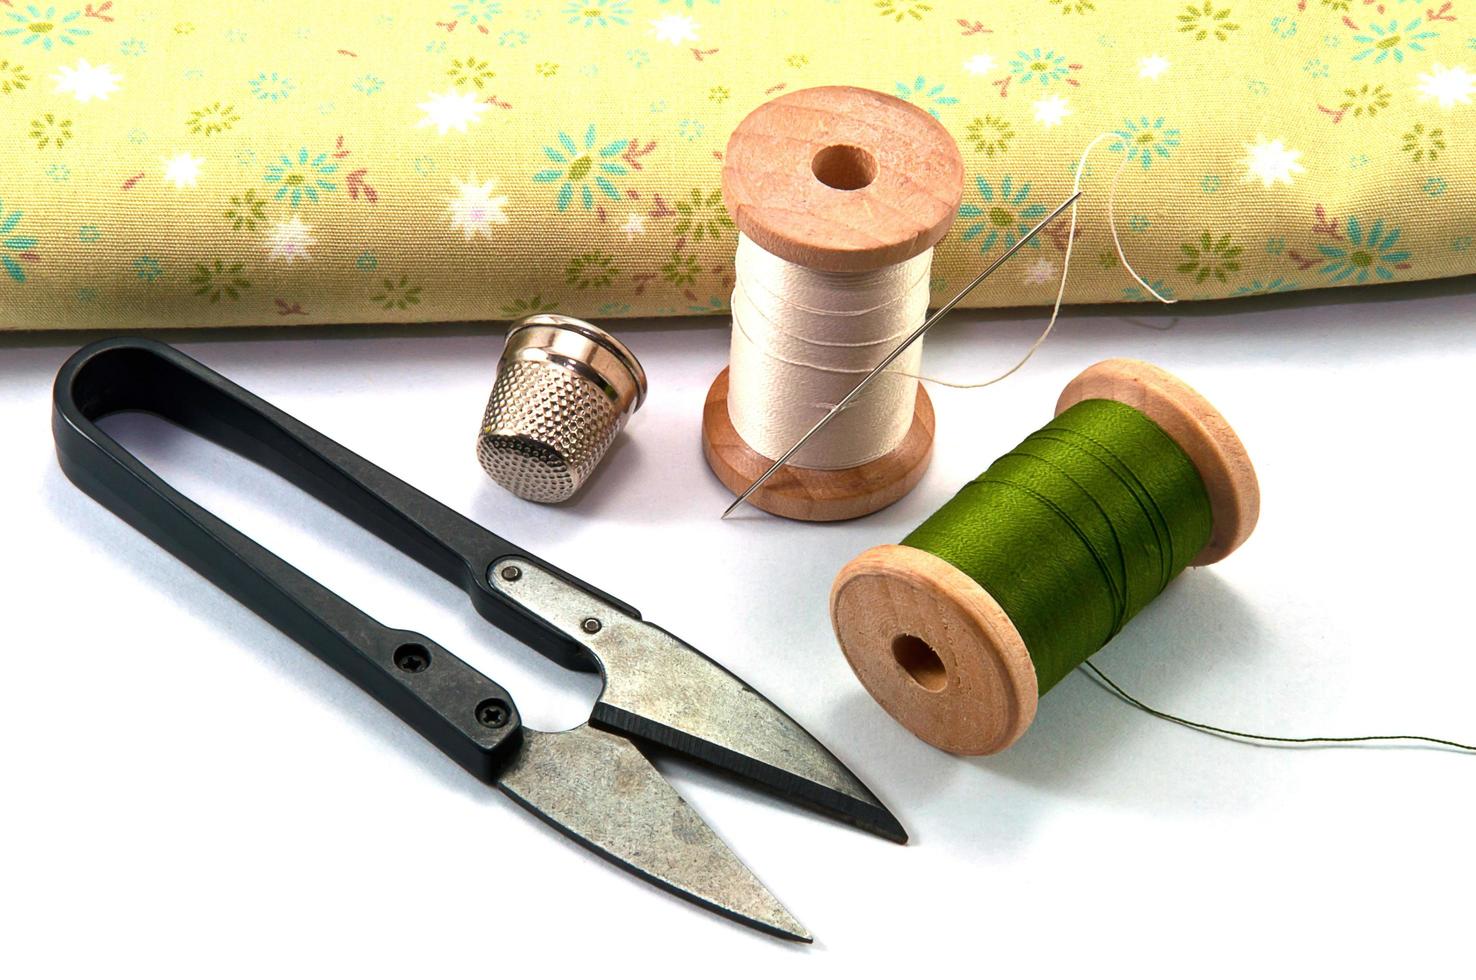 vingerhoed, naald, spoelen en schaar met doek voor het naaien op witte achtergrond foto